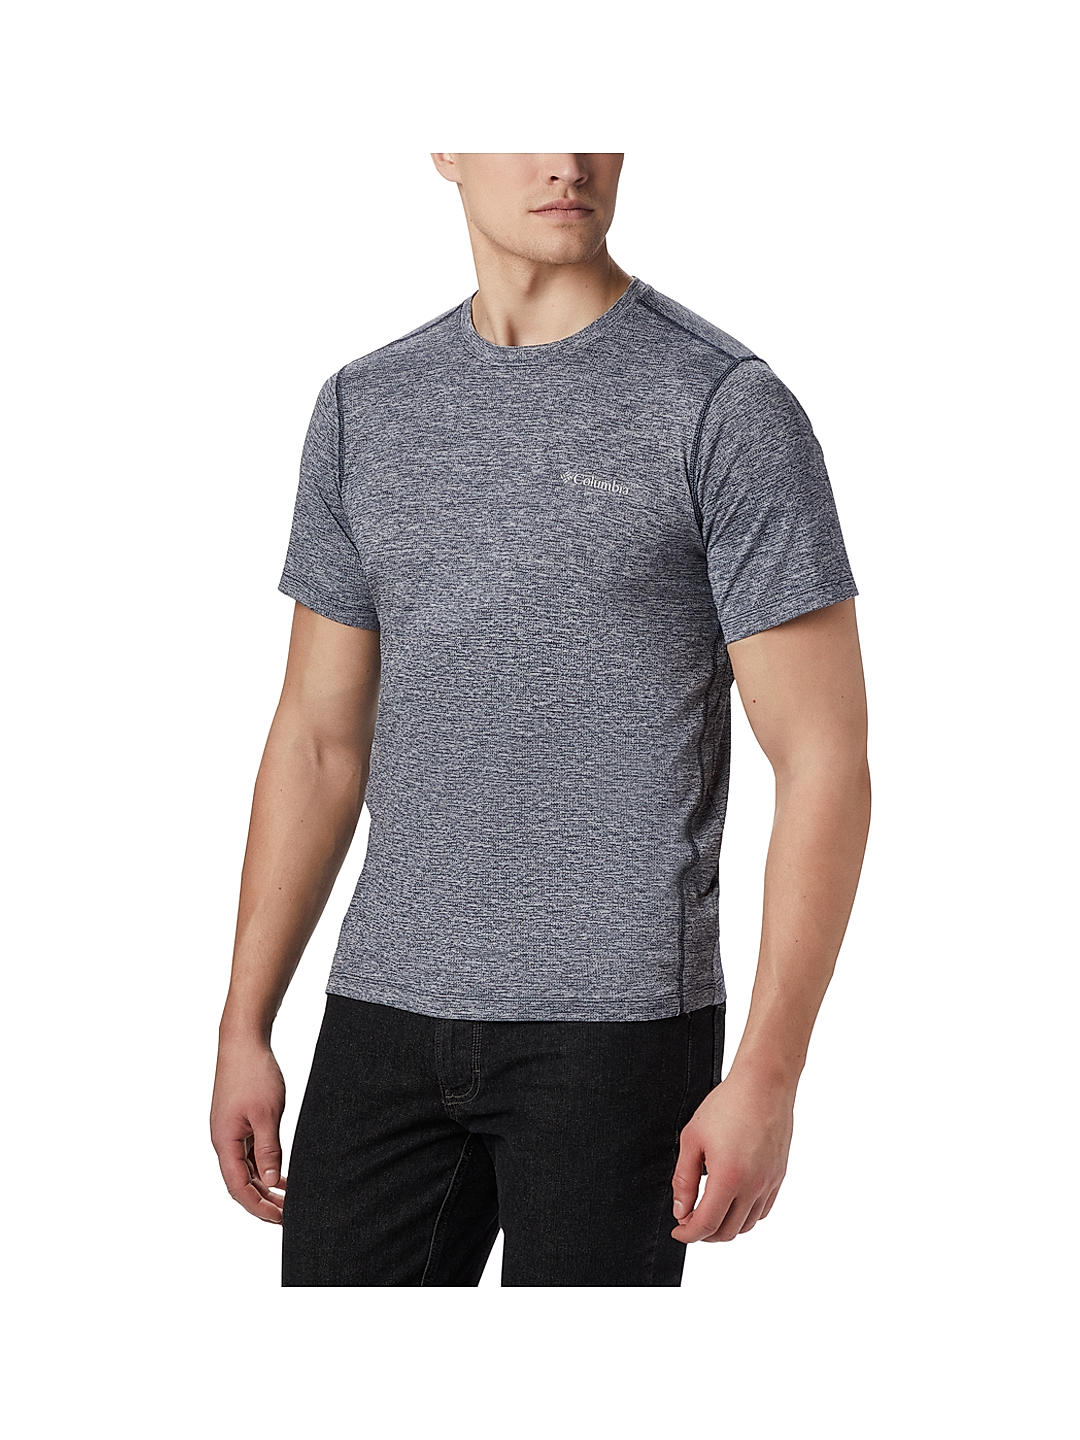 Buy Blue Deschutes Runner Short Sleeve Shirt for Men Online at Columbia  Sportswear